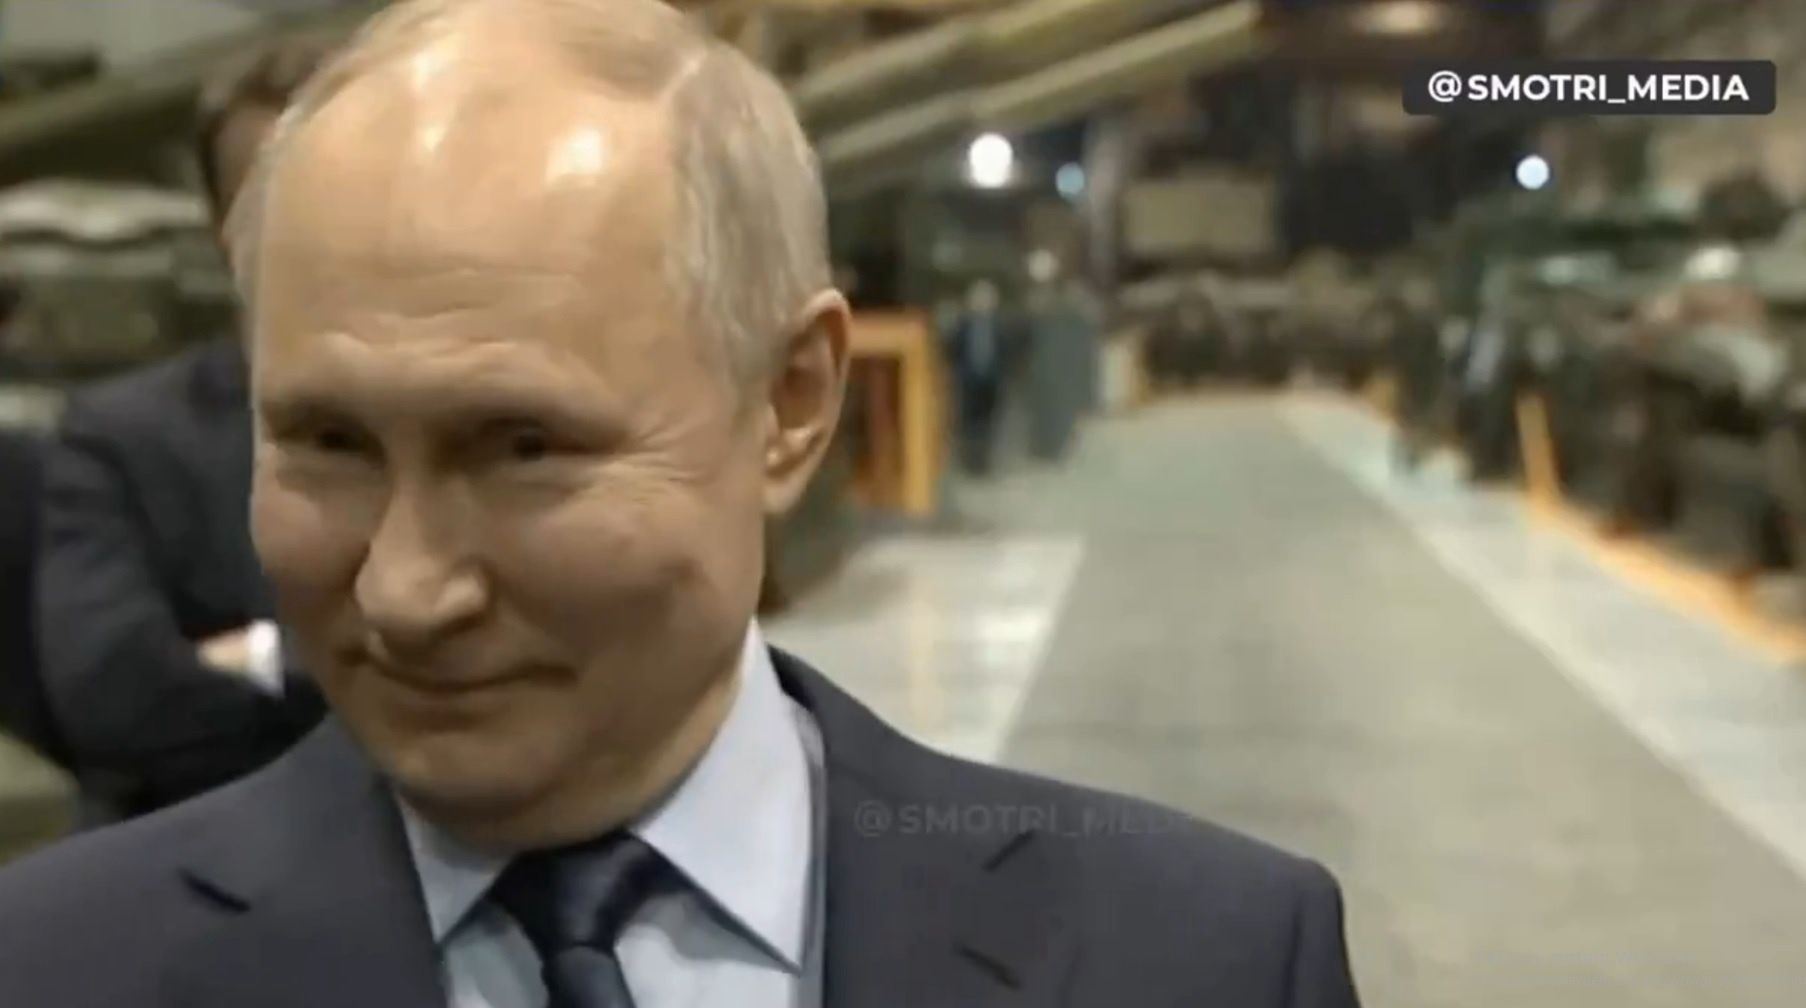 Egzystencjalne rozważania Putina. "Chyba pora już mieć dzieci"